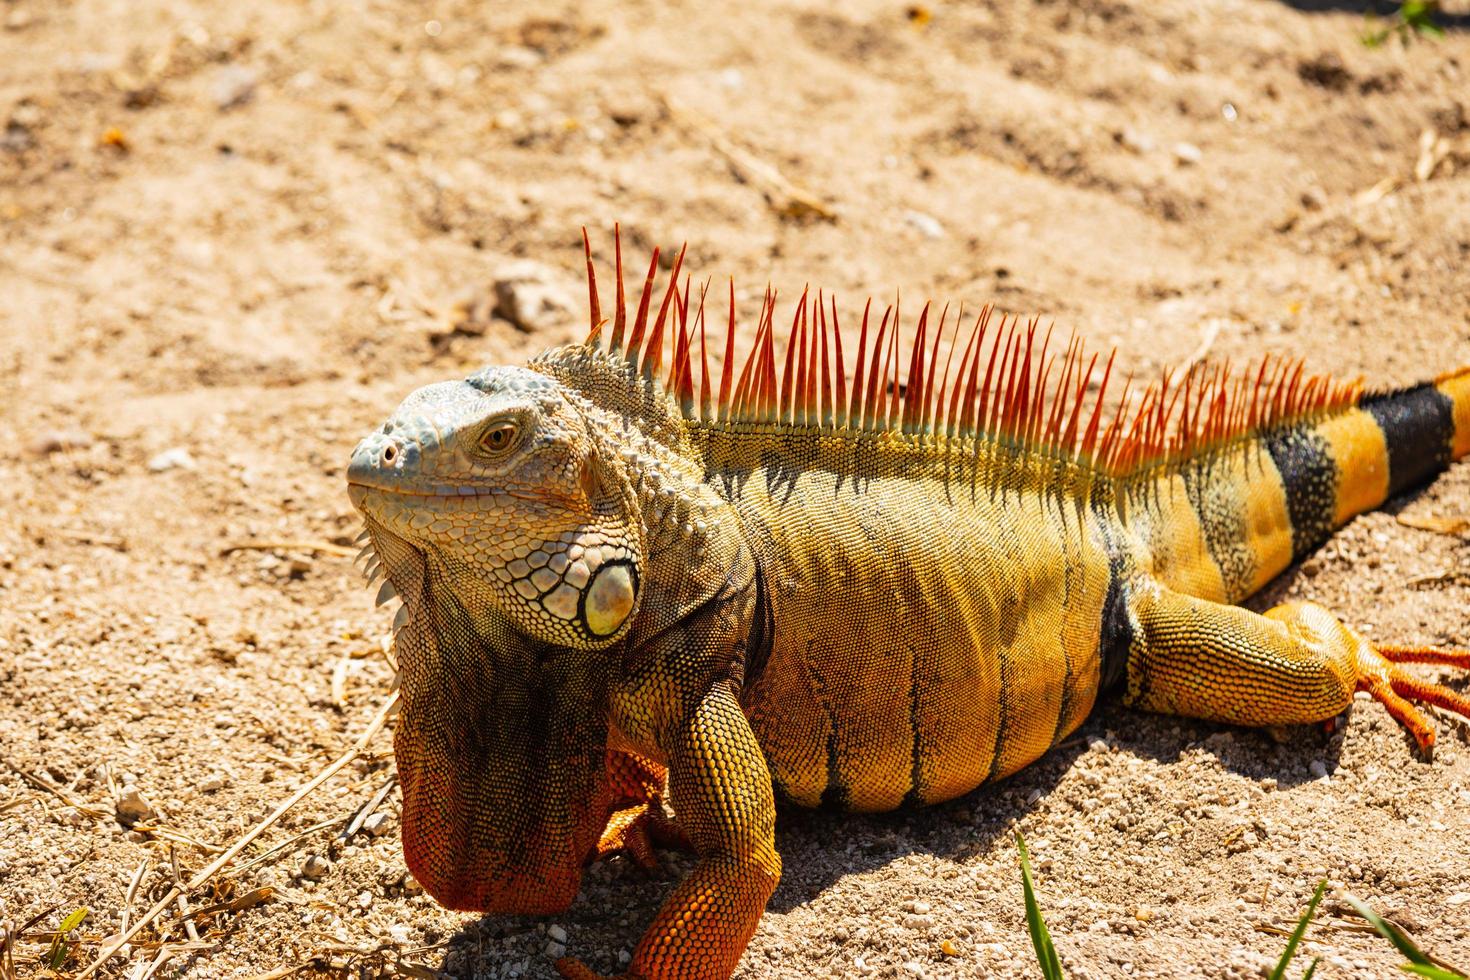 Close-up of iguana photo